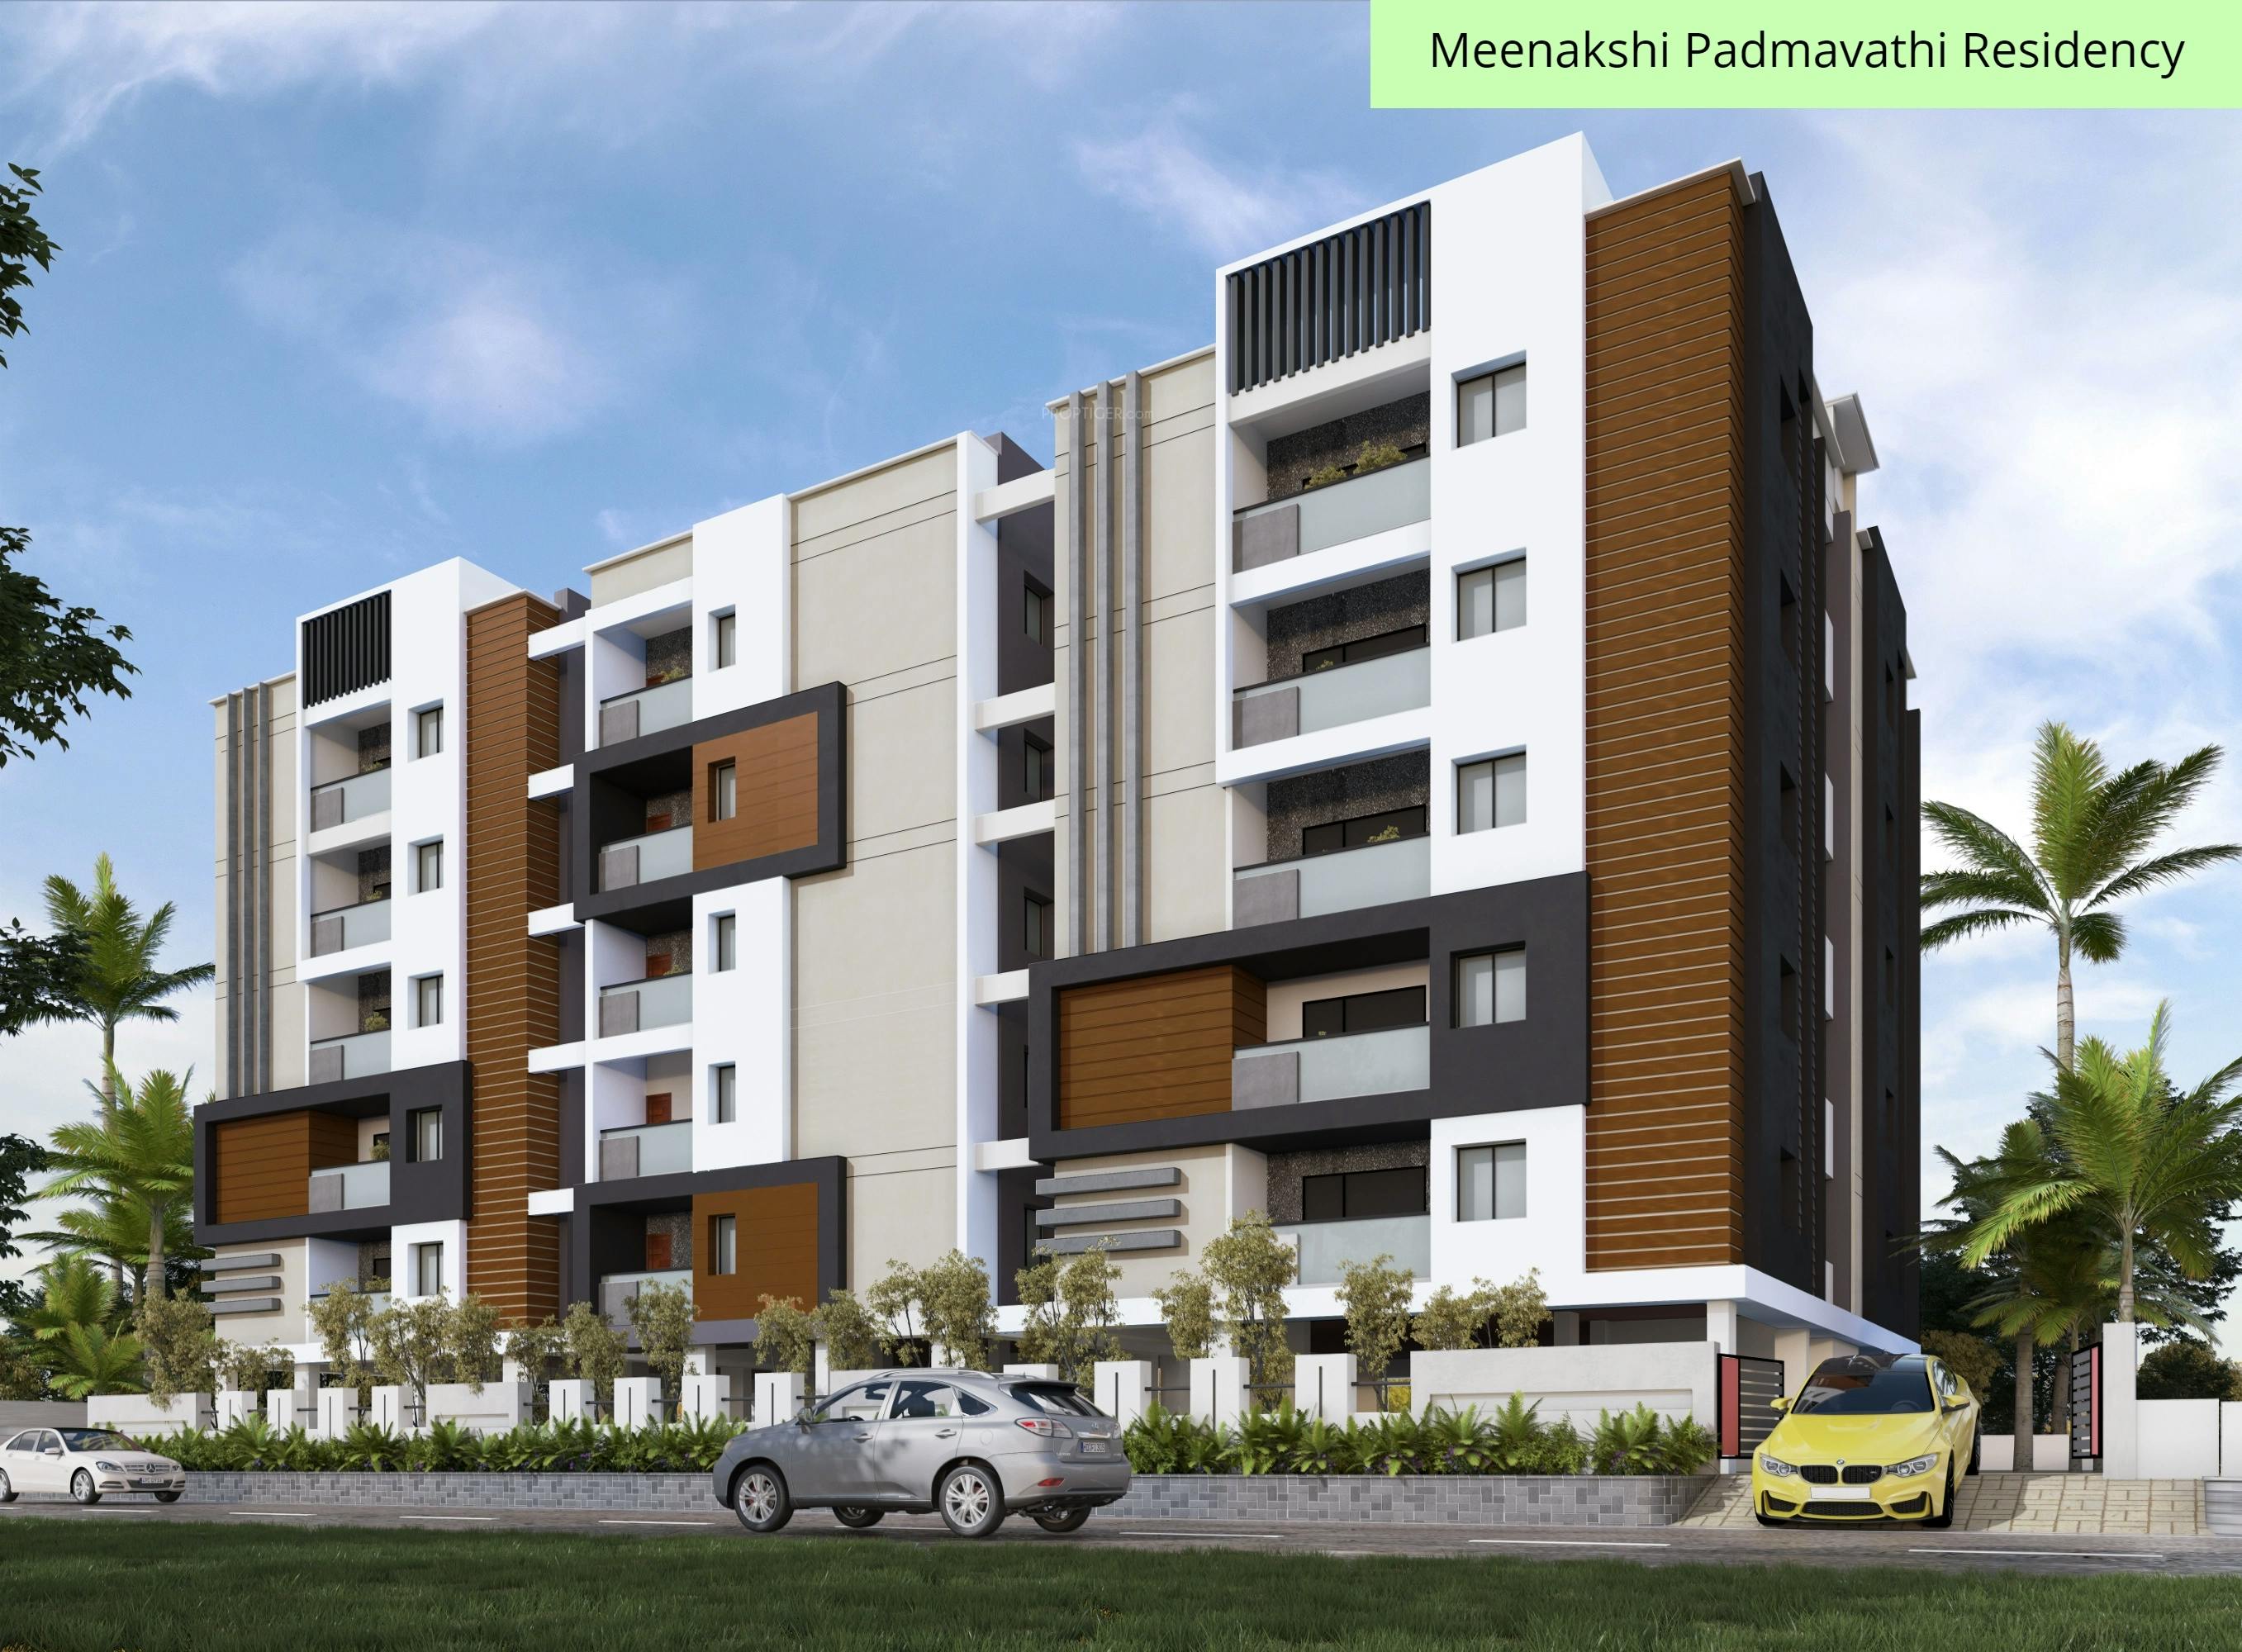 Floor plan for Meenakshi Padmavathi Residency